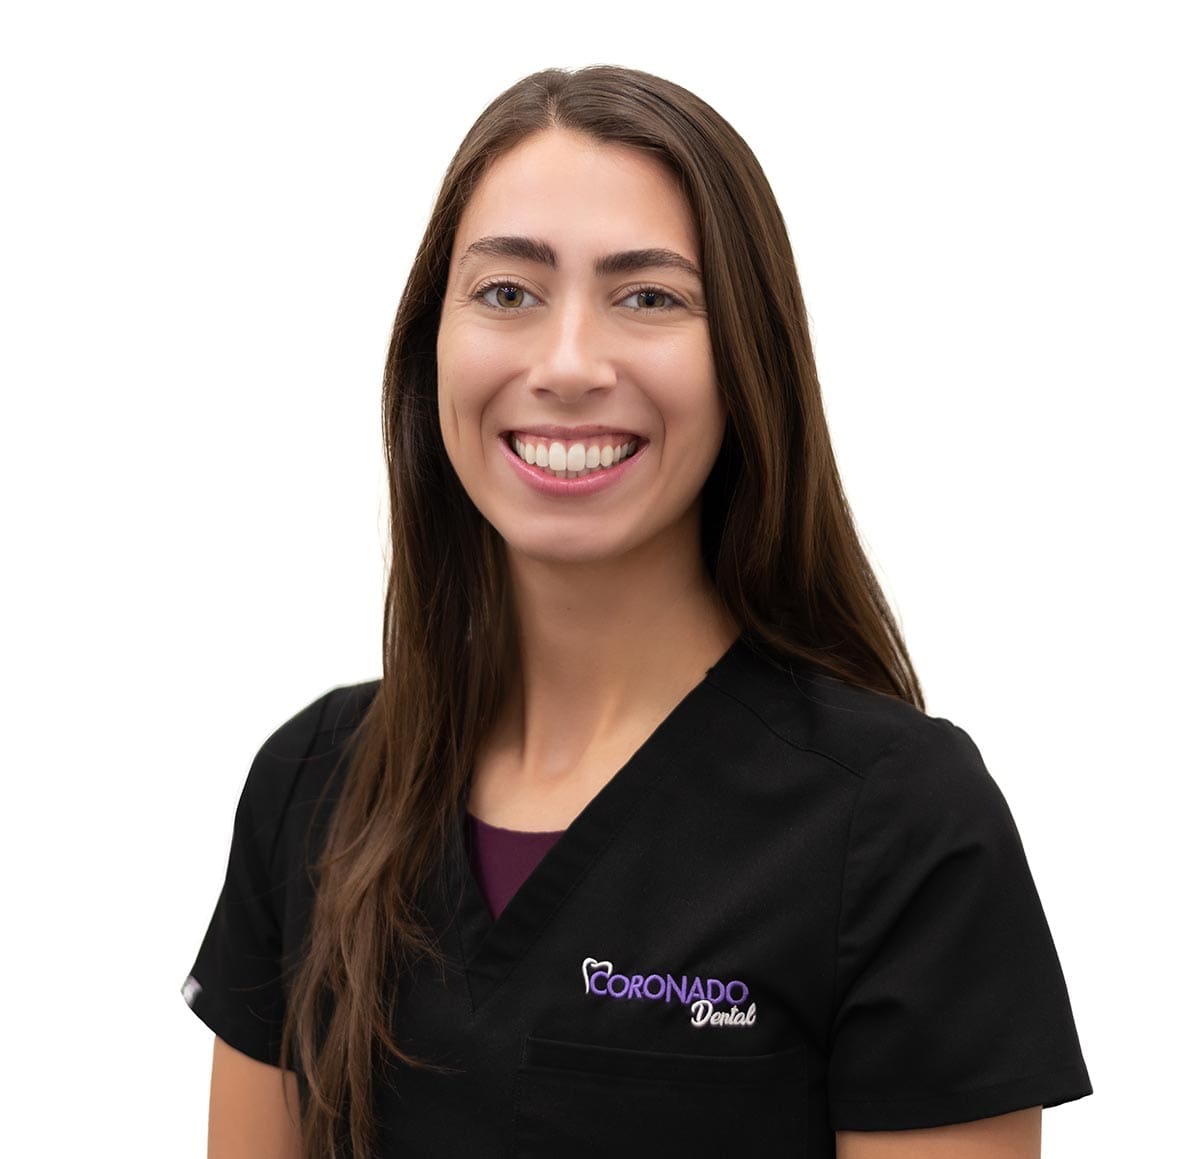 Coronado Dental Personalized dental care for senior living resident team Kirsten Dever image - Meet the Team